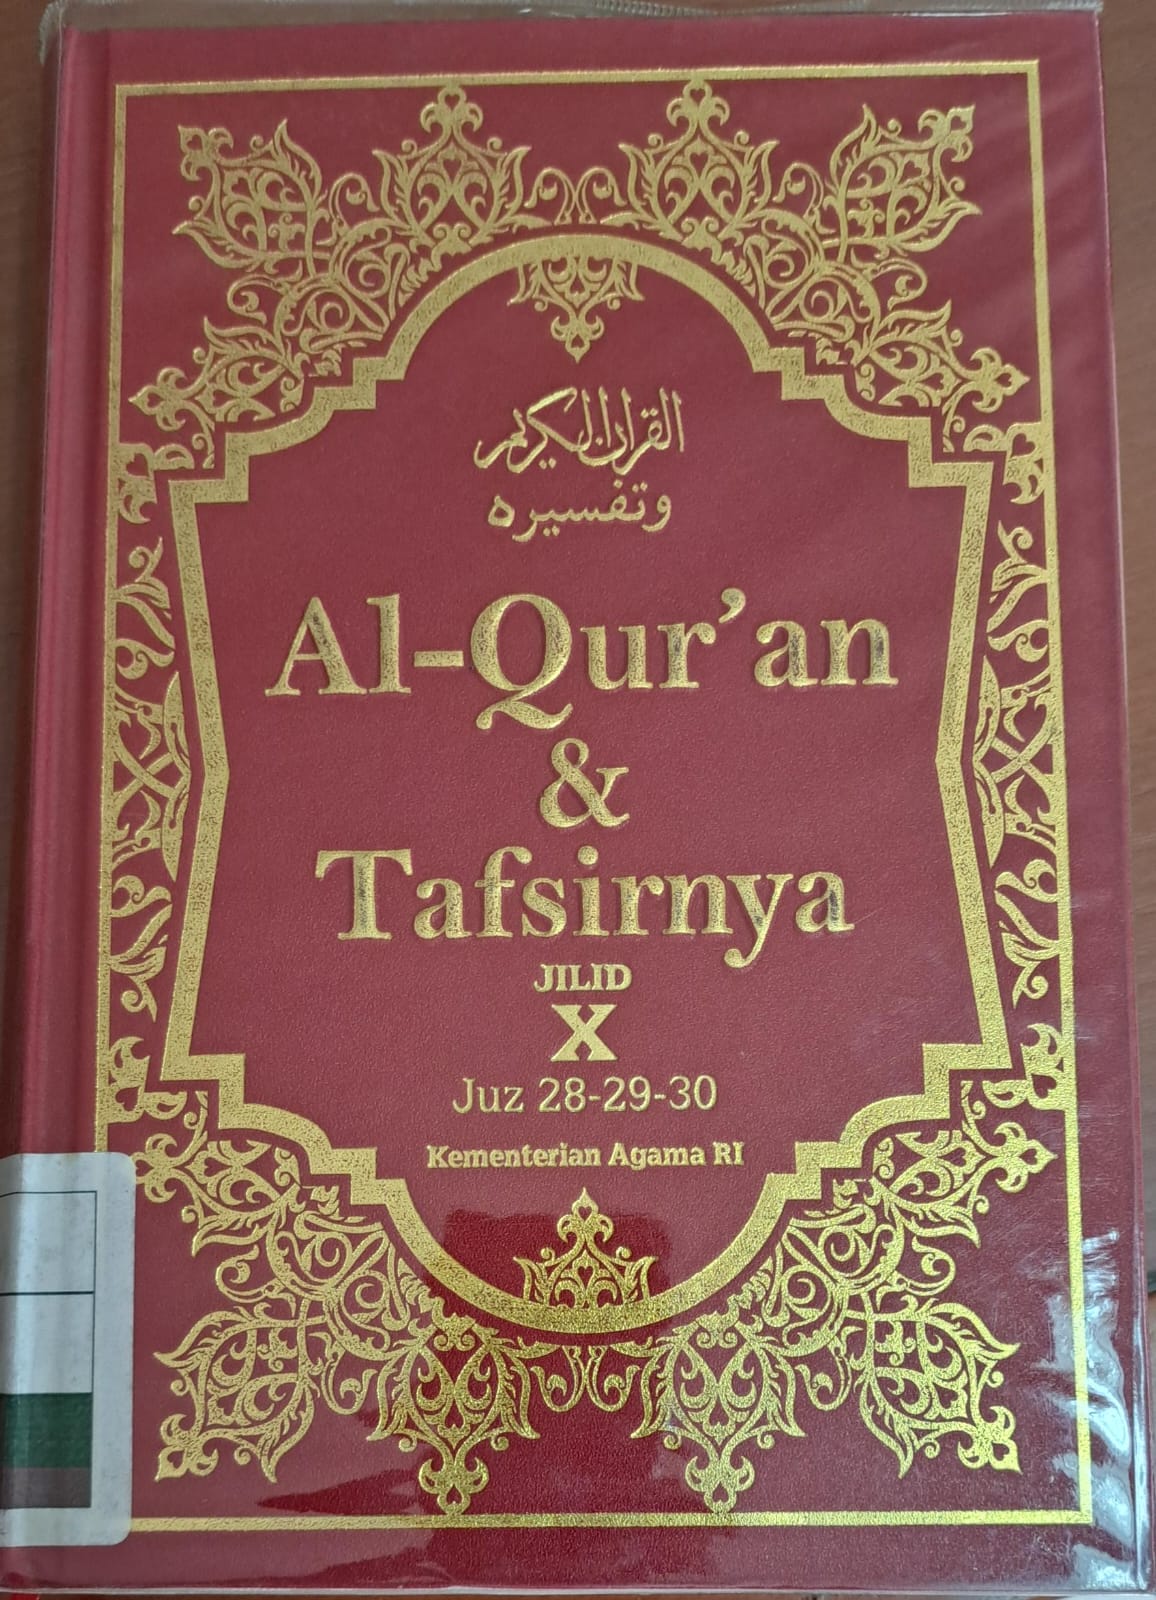 Al-qur'an & tafsirnya jilid X :  Juz 28-29-30